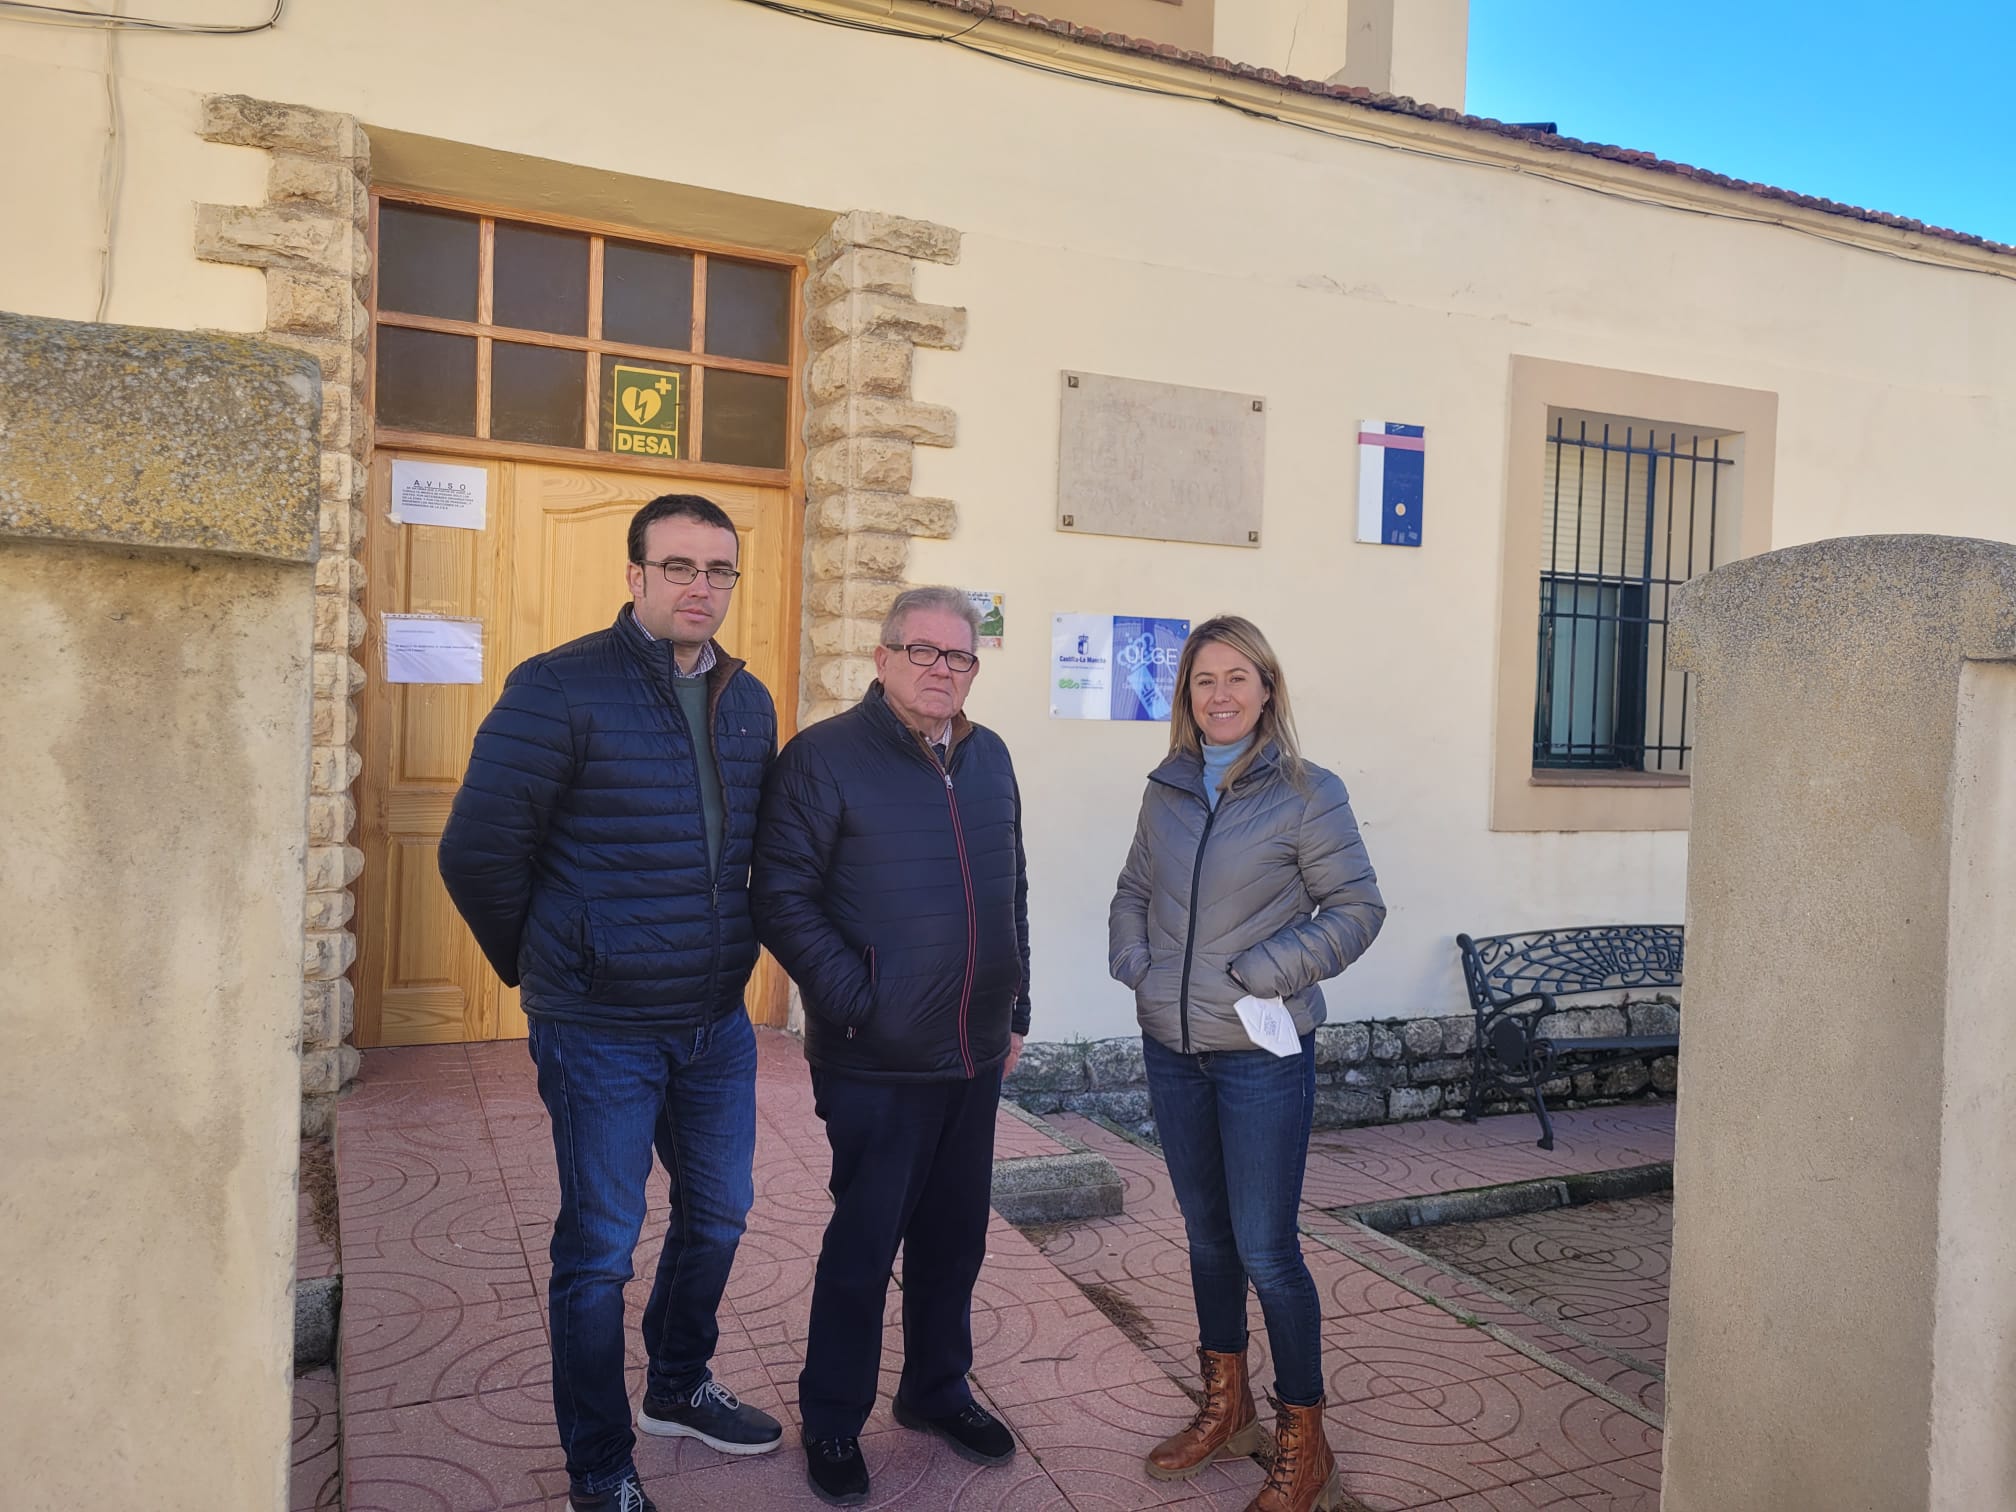 El Gobierno de Castilla-La Mancha y la Diputación Provincial de Cuenca destinan 5.000 euros a la mejora del consultorio de la localidad de Moya